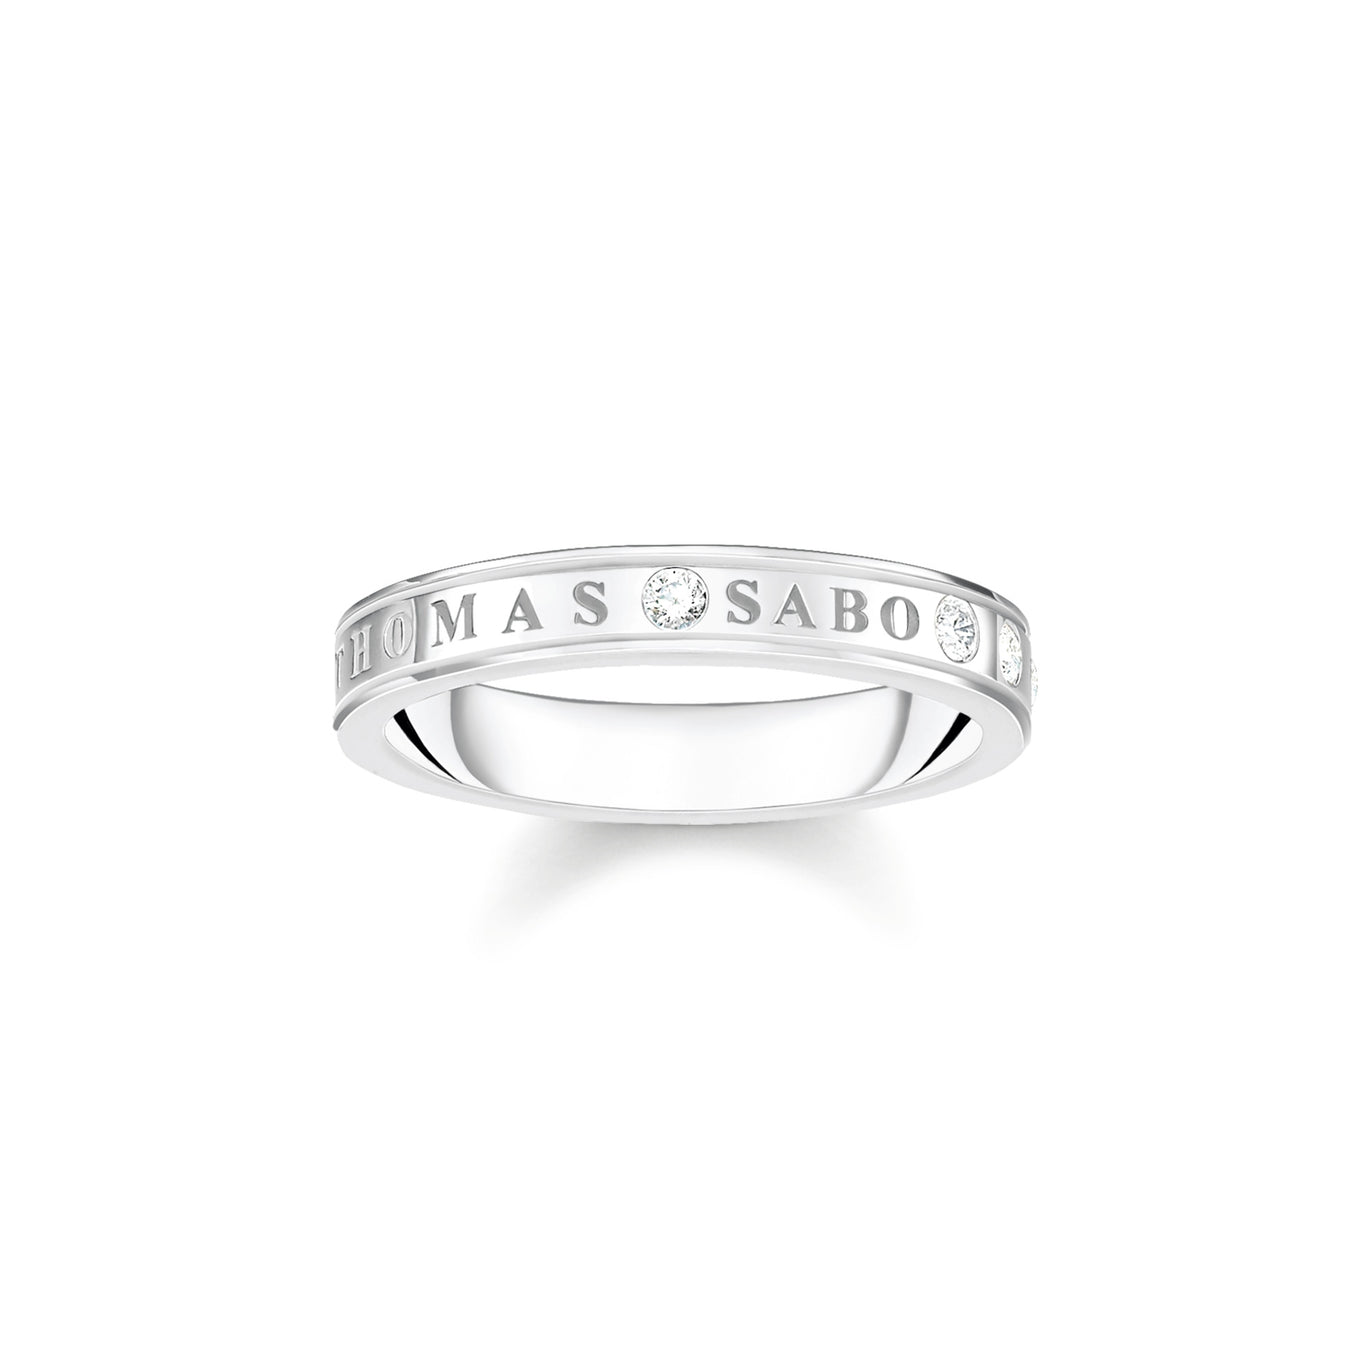 Thomas Sabo Silver Ring with White Stones